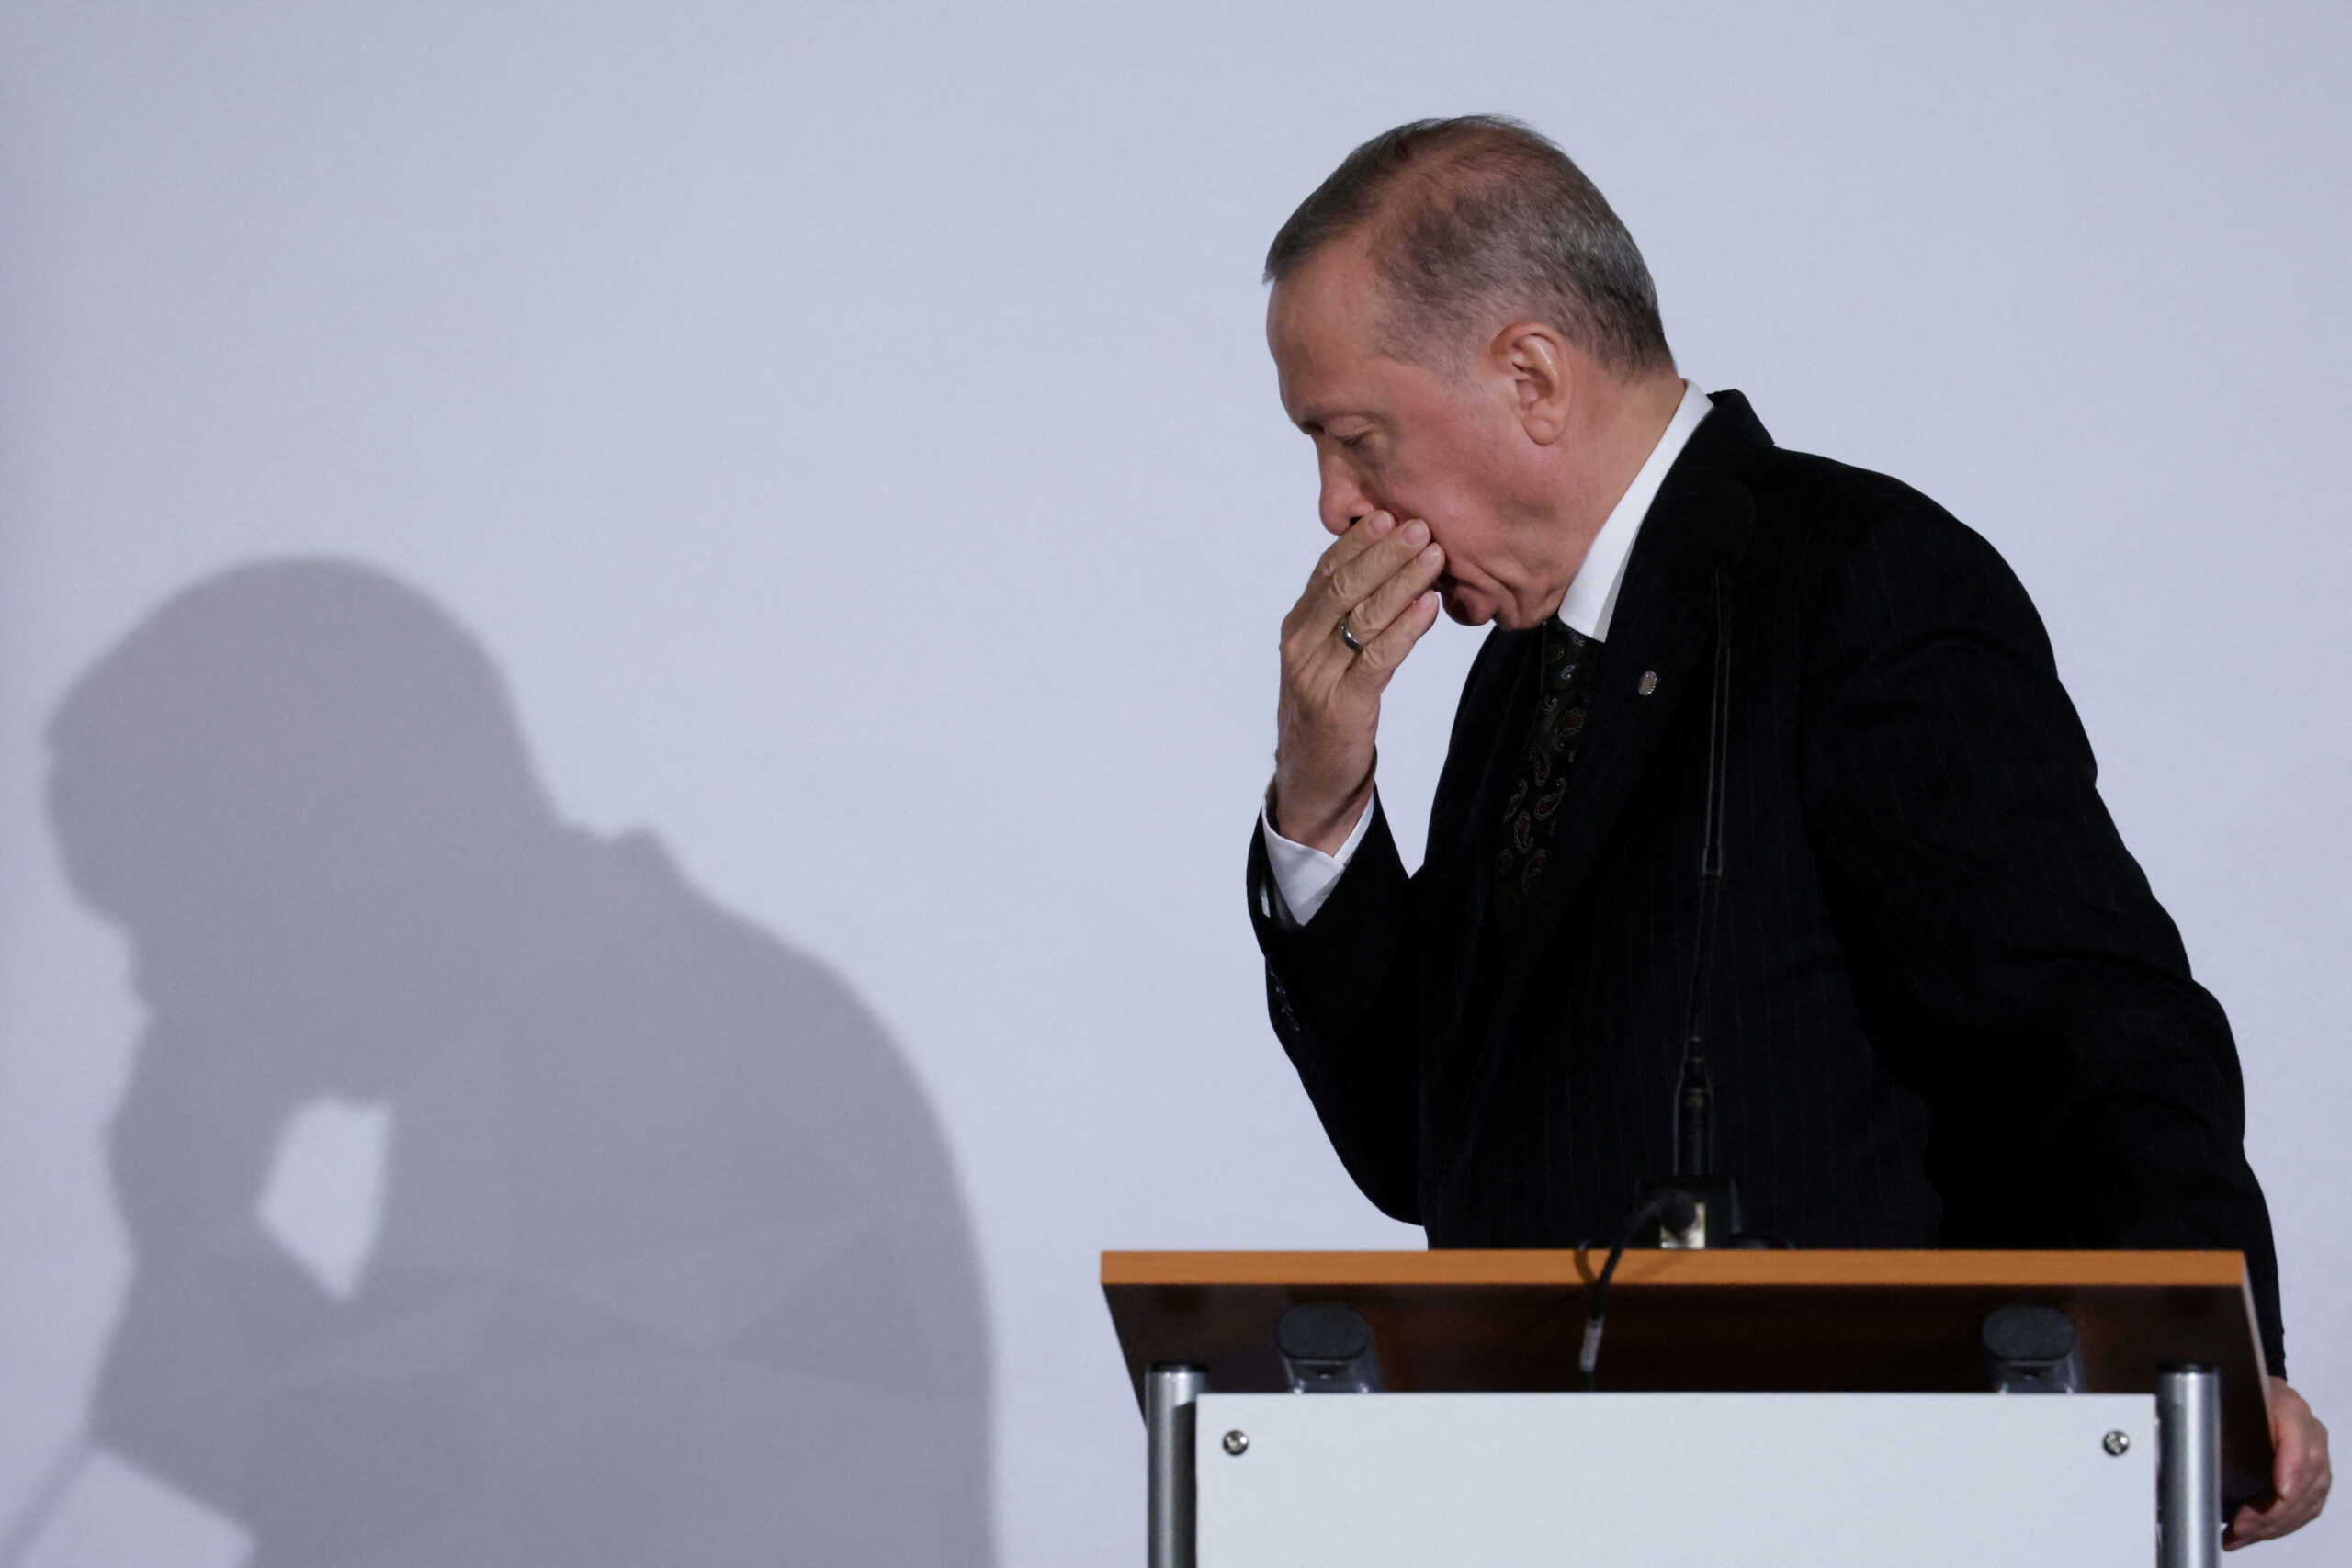 Δημοσκόπηση «χαστούκι» για τον Ρετζέπ Ταγίπ Ερντογάν: Στο 1% η διαφορά από τον Κεμάλ Κιλιντσντάρογλου